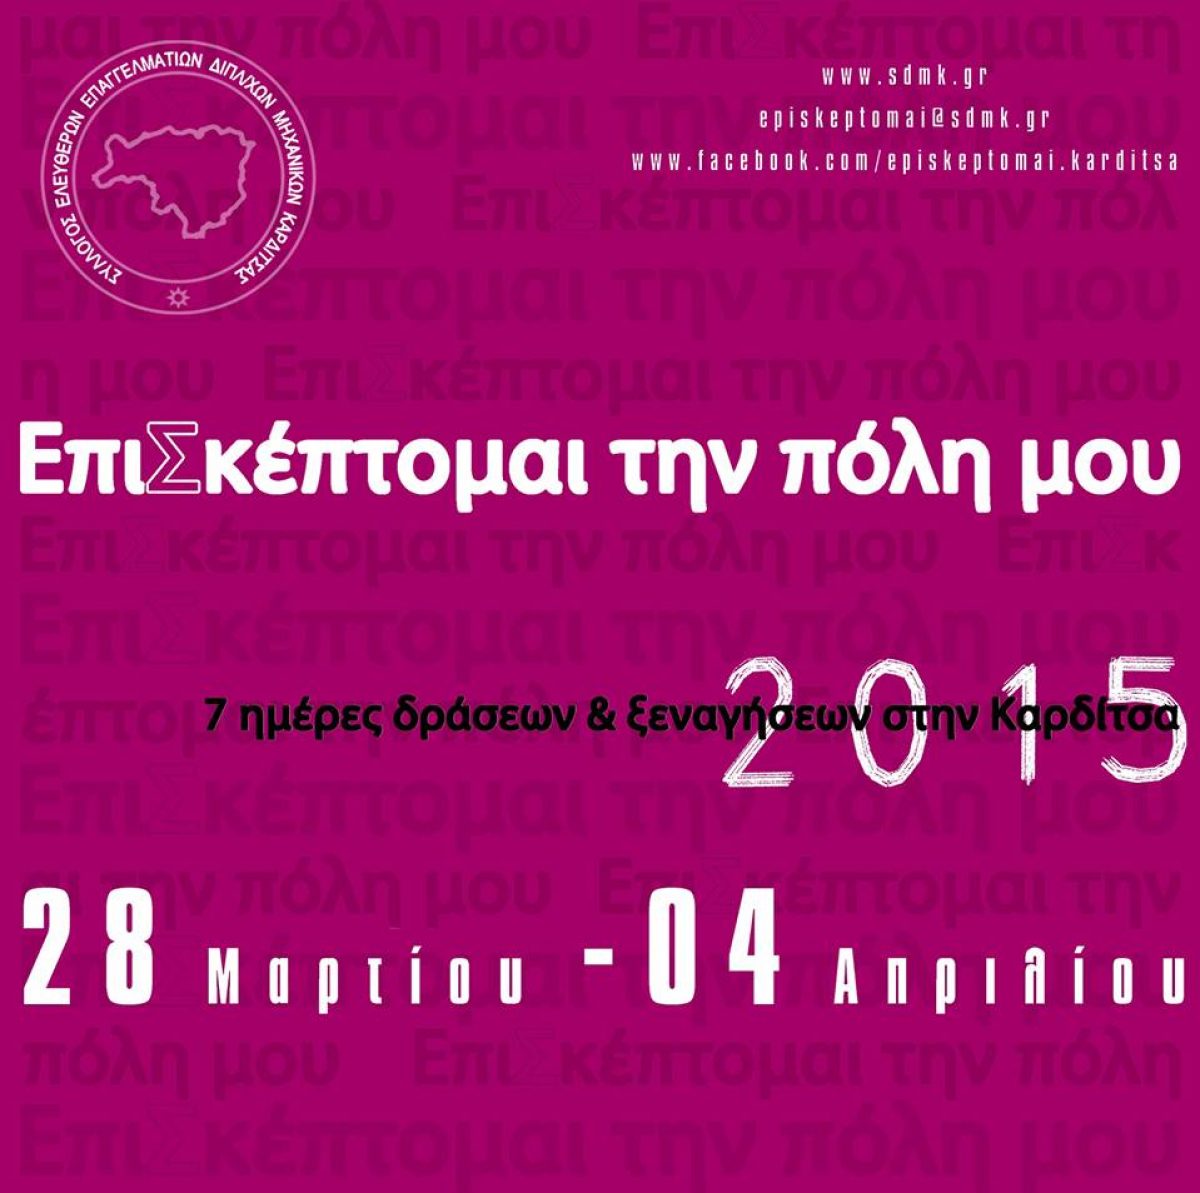 ΕπιΣκέπτομαι την πόλη μου 2015 – 7 μέρες δράσεων & ξεναγήσεων στην Καρδίτσα, 28 Μαρτίου έως 4 Απριλίου 2015